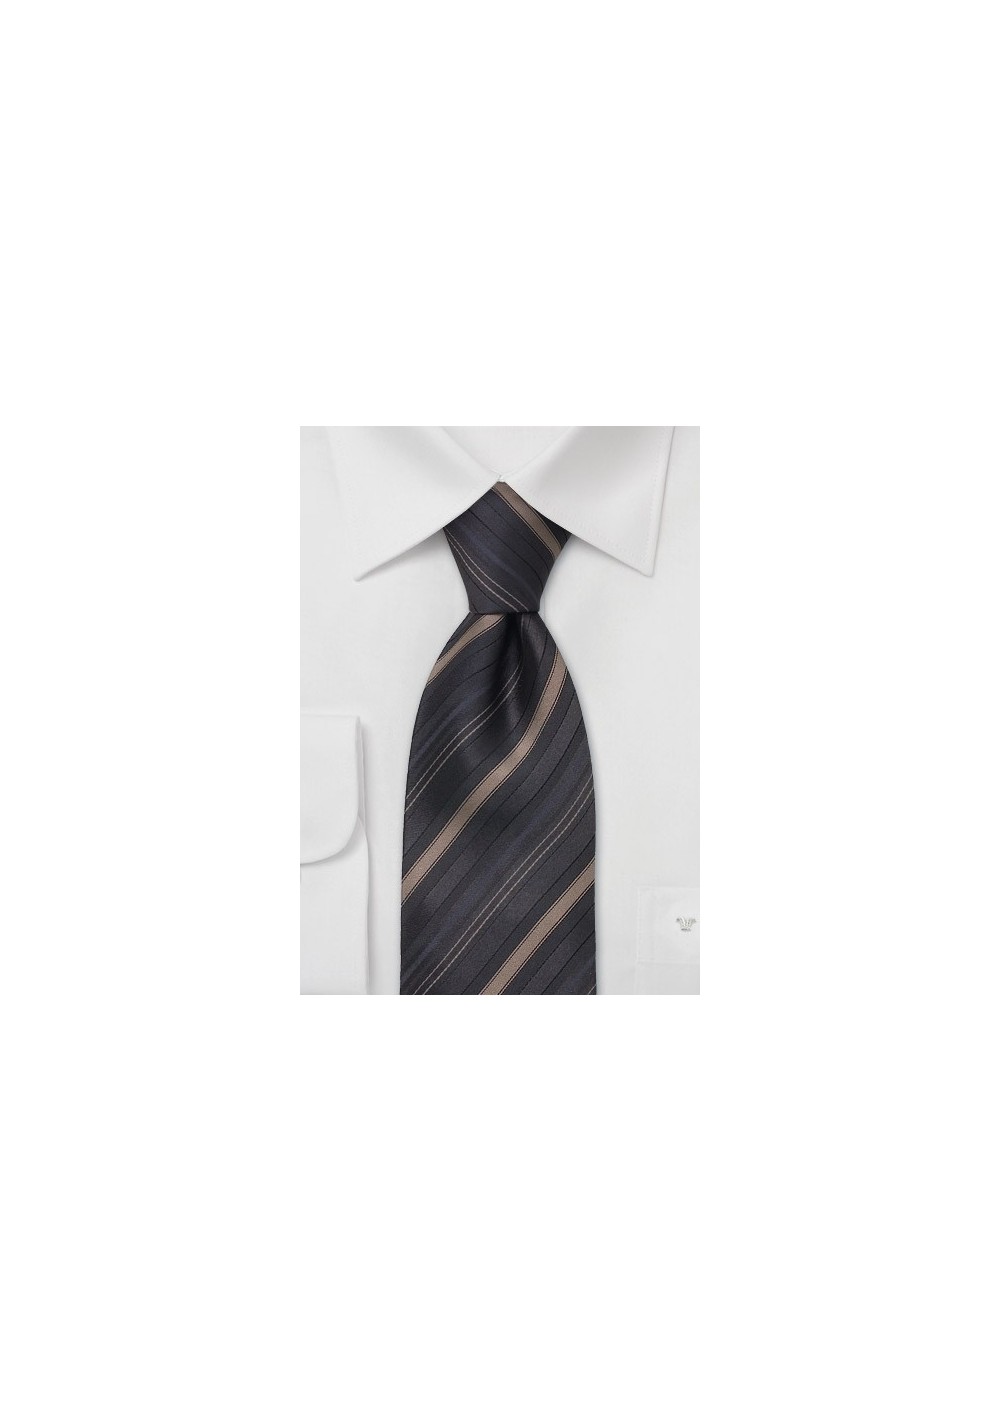 XL neckties - Brown striped XL tie